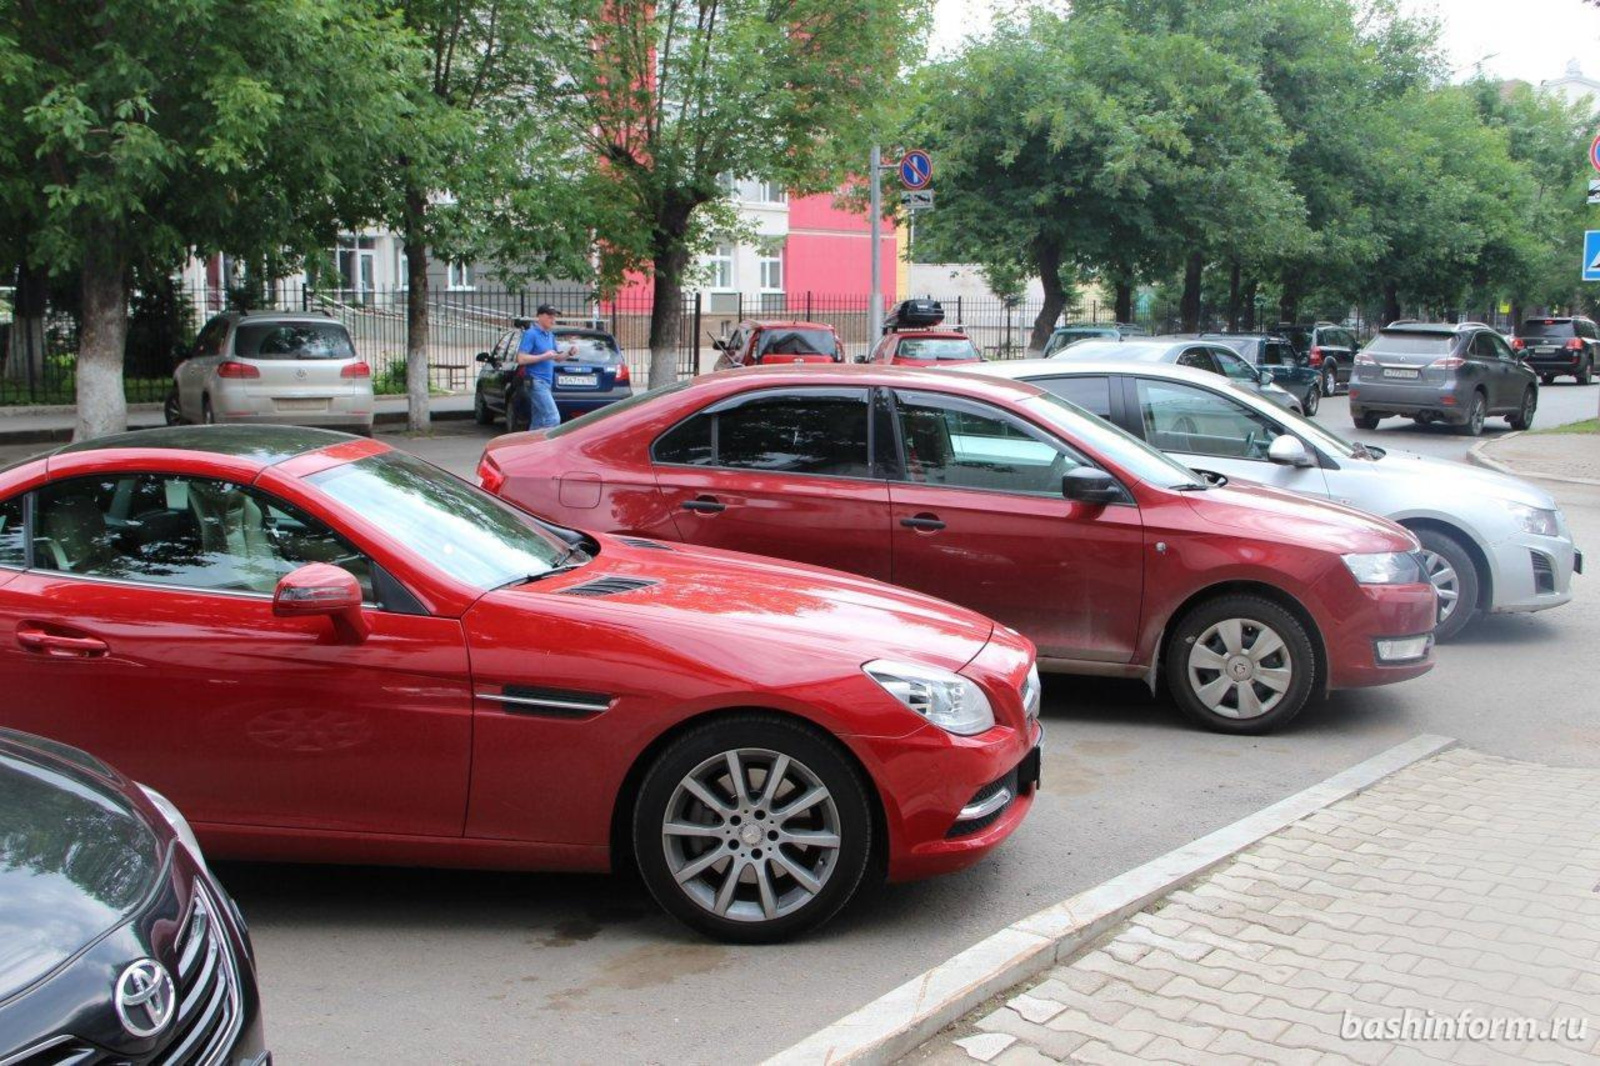 Жители России смогут купить подержанный автомобиль через Госуслуги